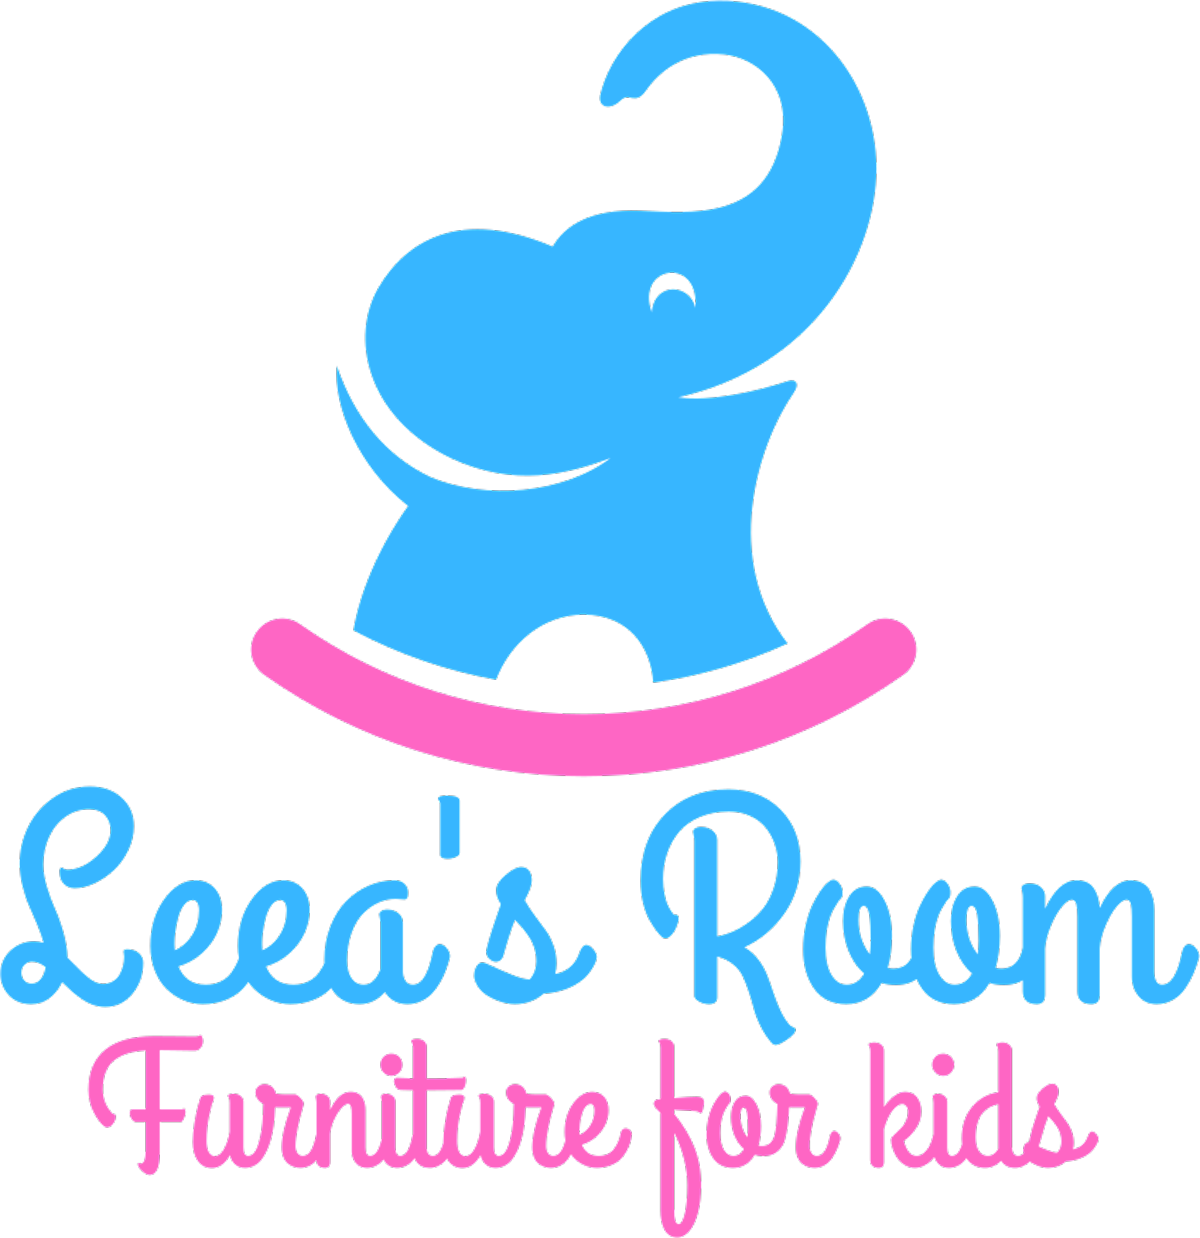 Leeas Room